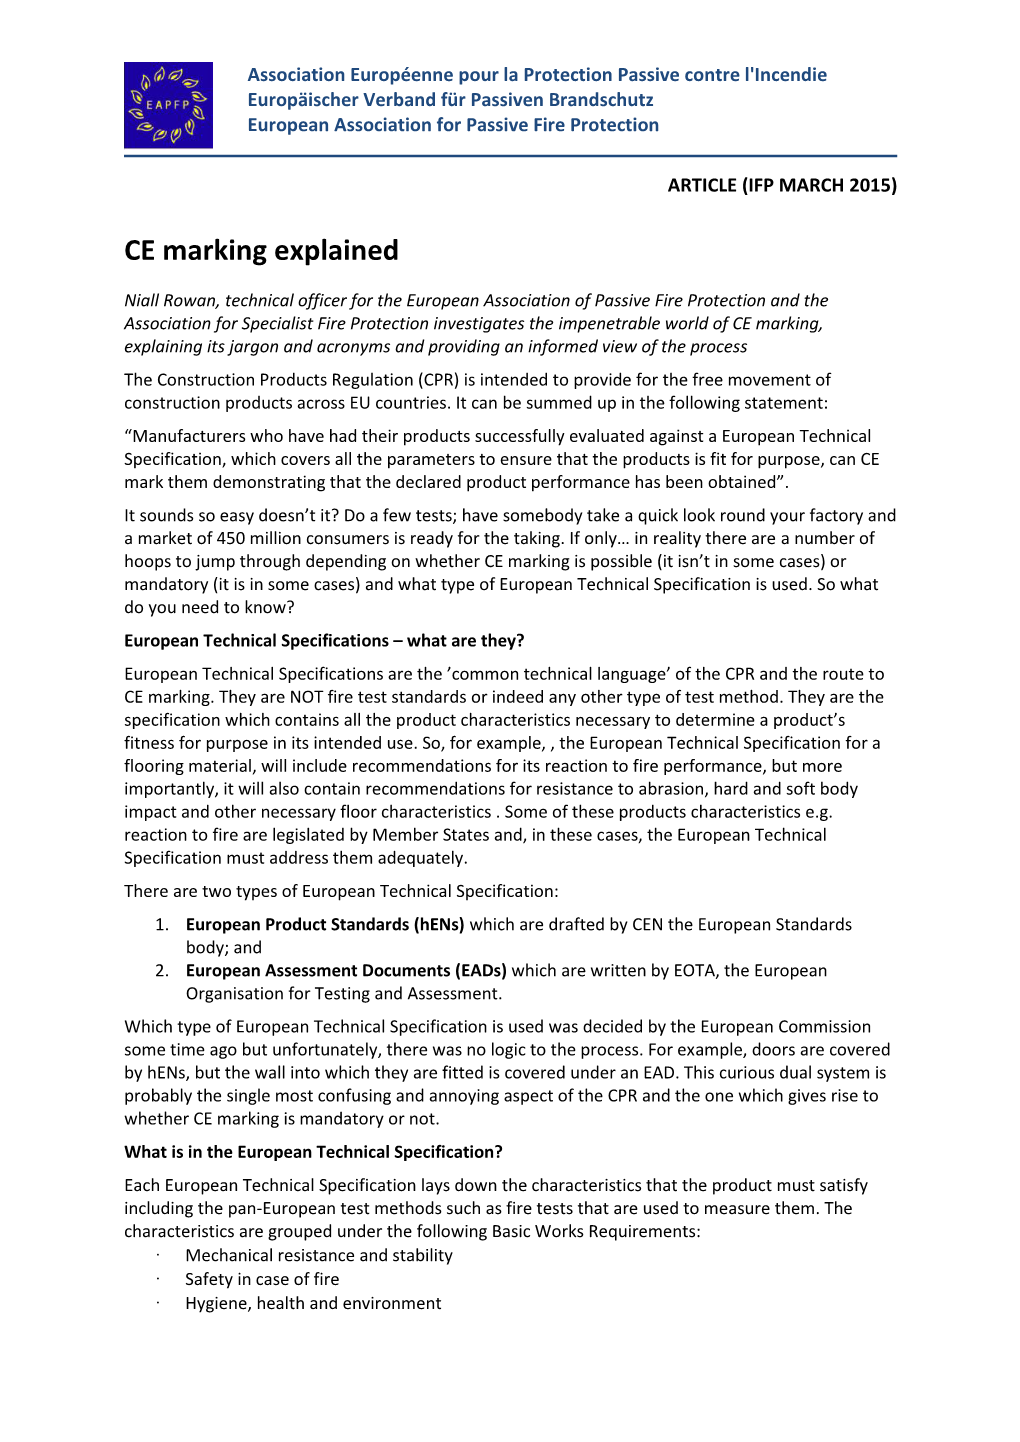 CE Marking Explained